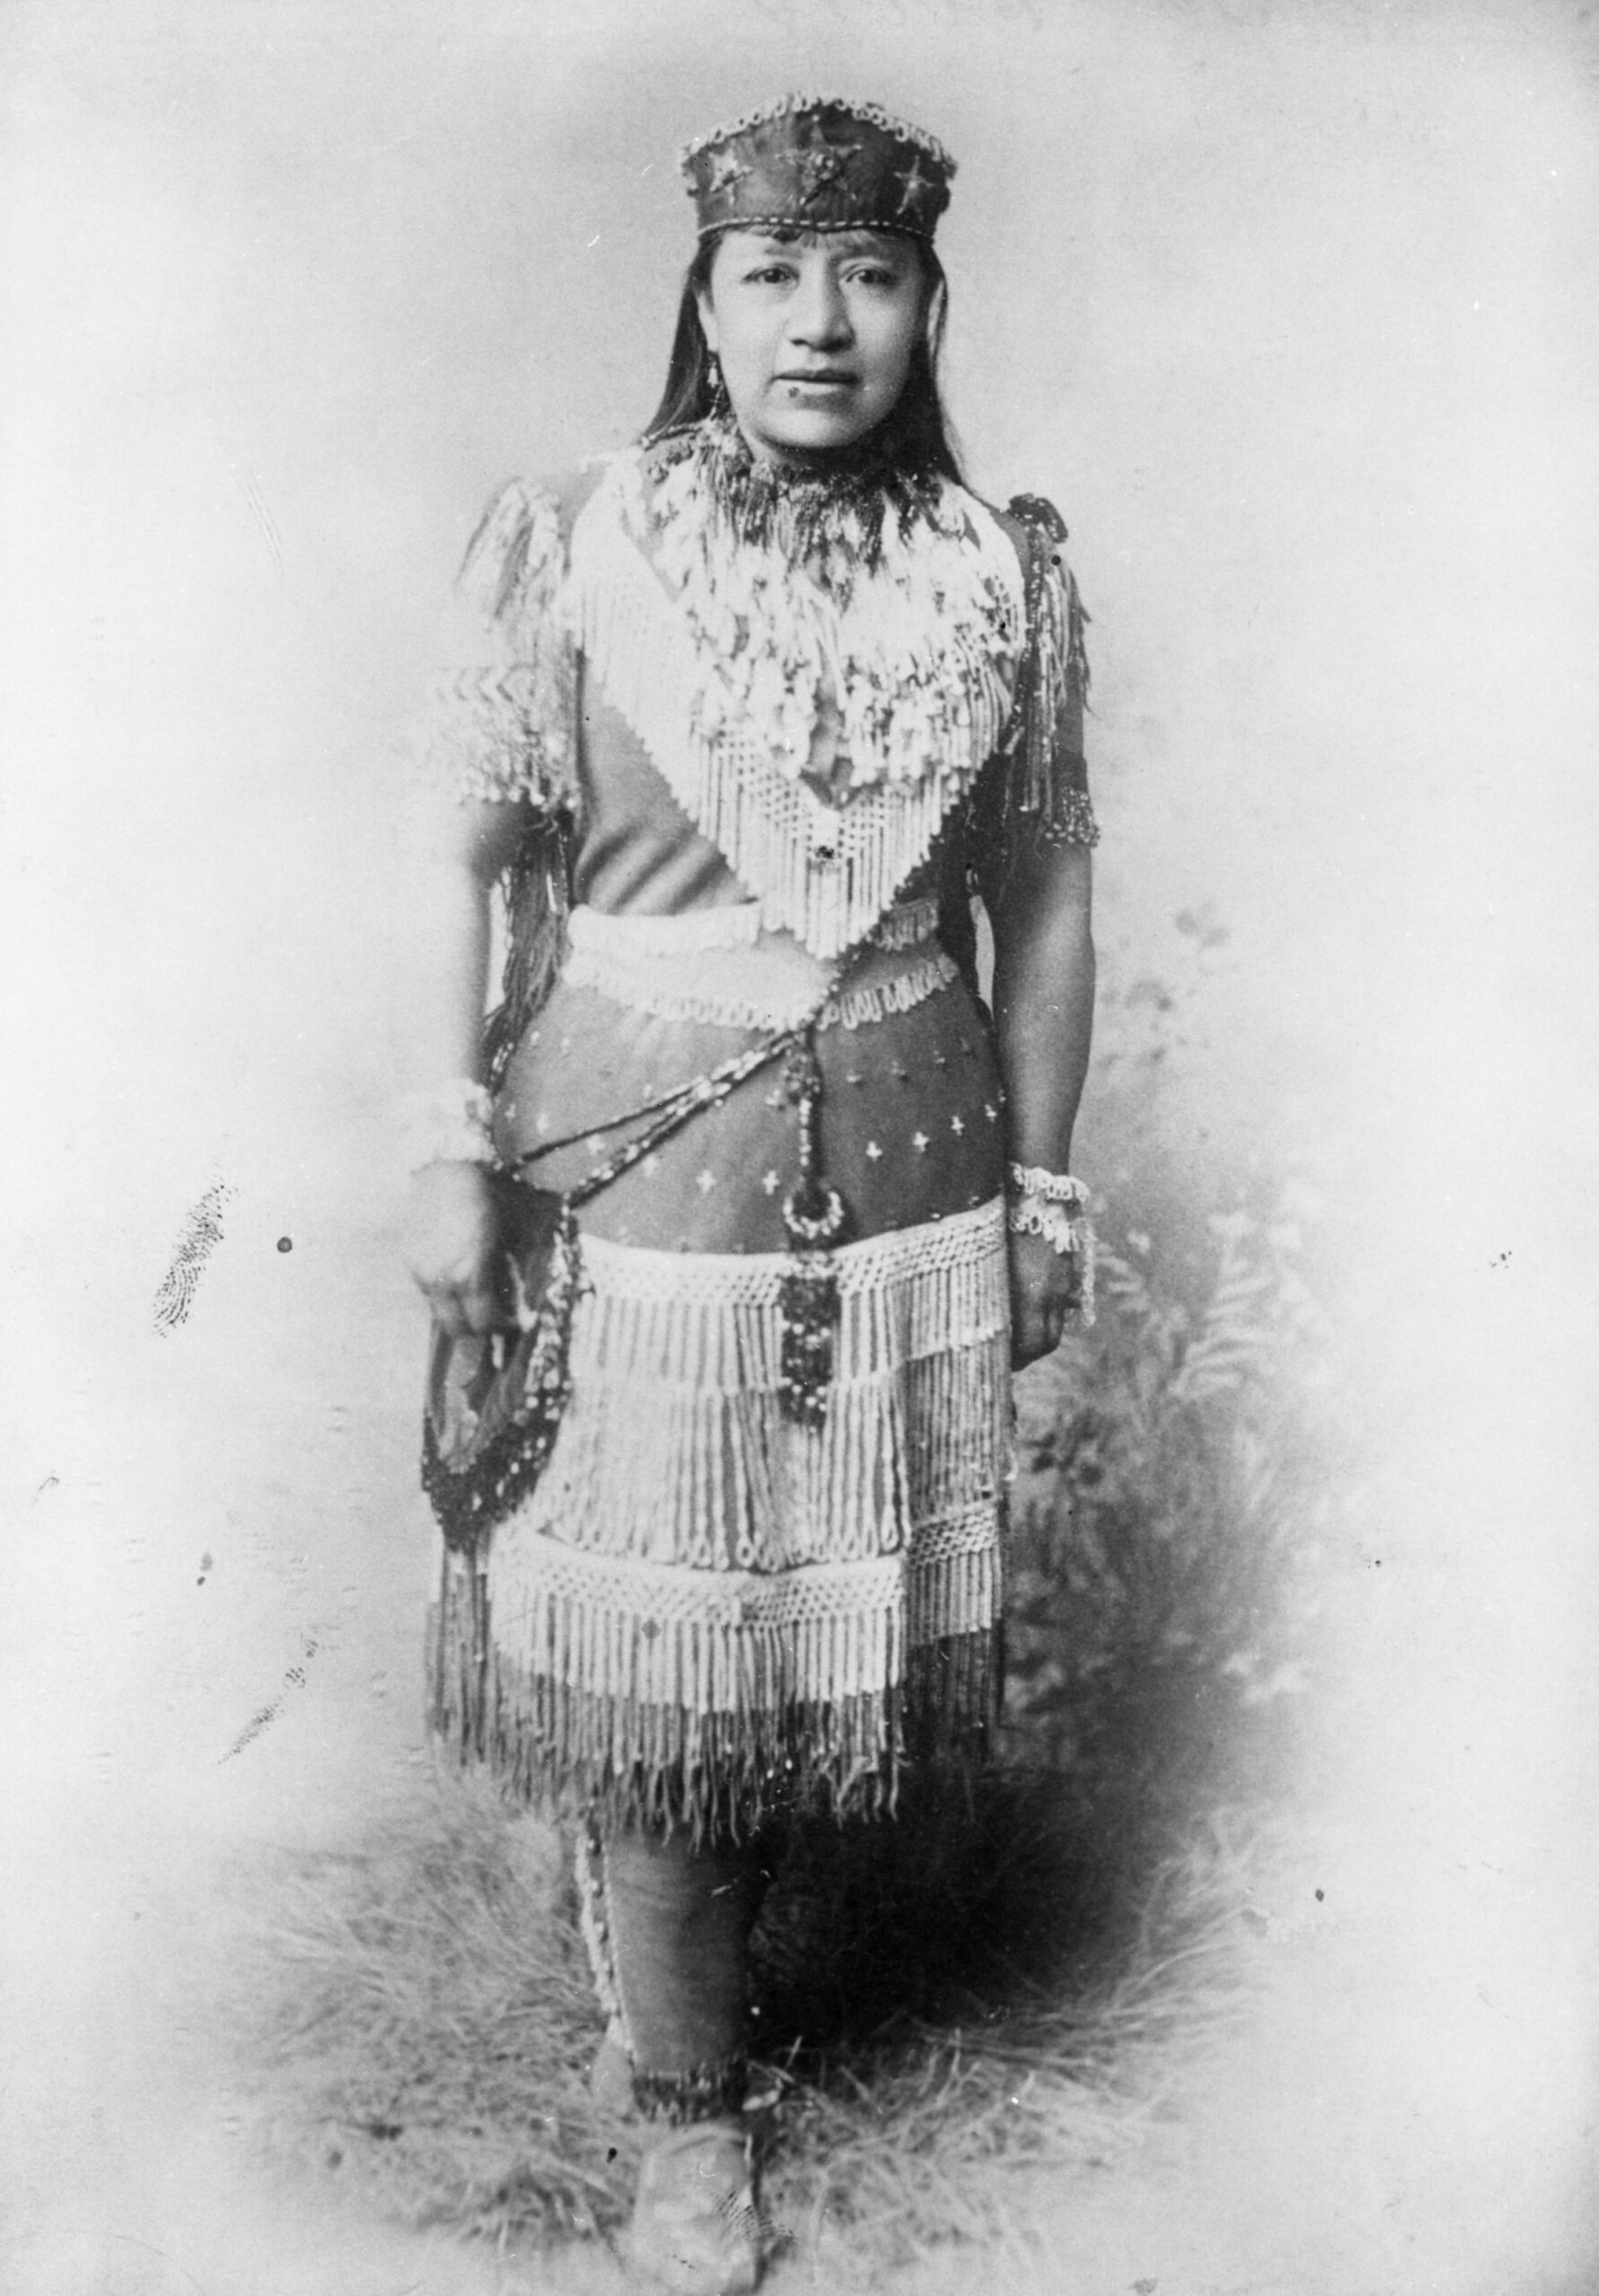 Sarah Winnemucca in Native American Paiute dress